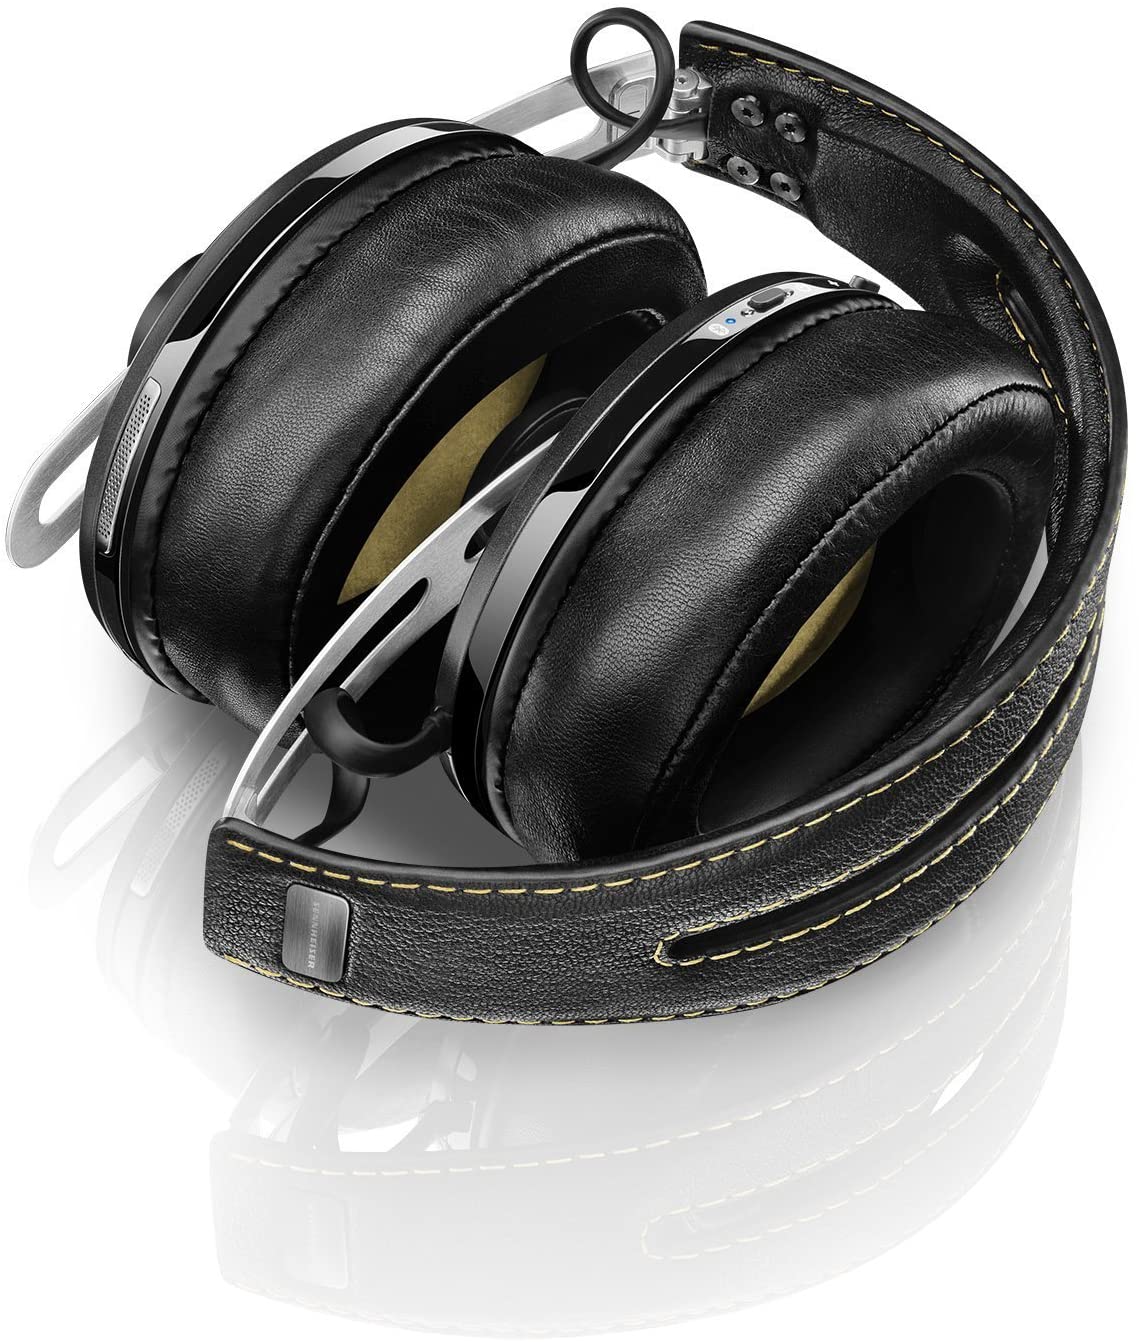 Sennheiser MOMENTUM 2.0 WIRELESS Headset Black